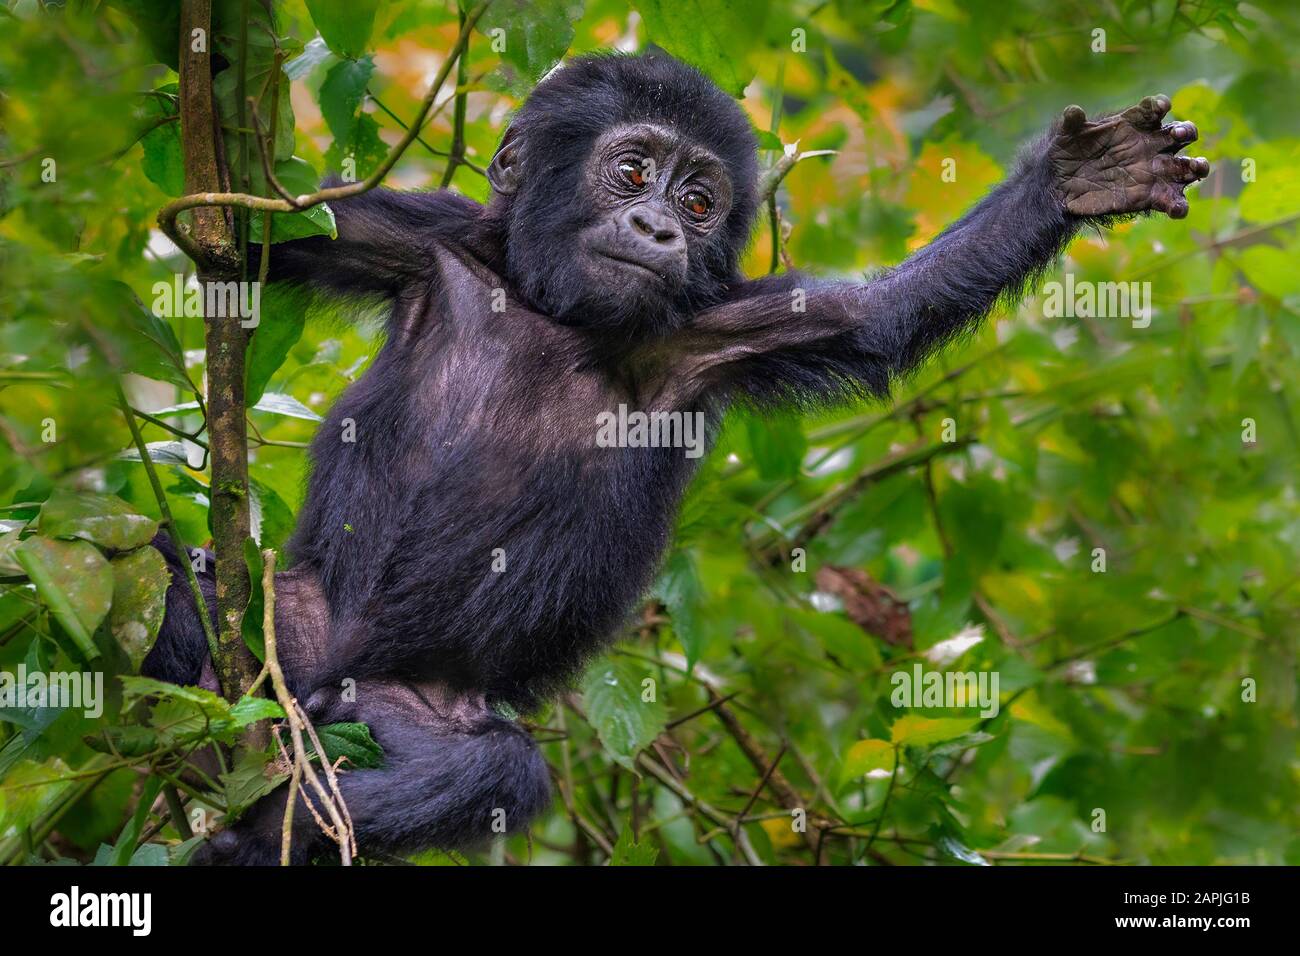 Young mountain gorilla, Bwindi, Uganda Stock Photo